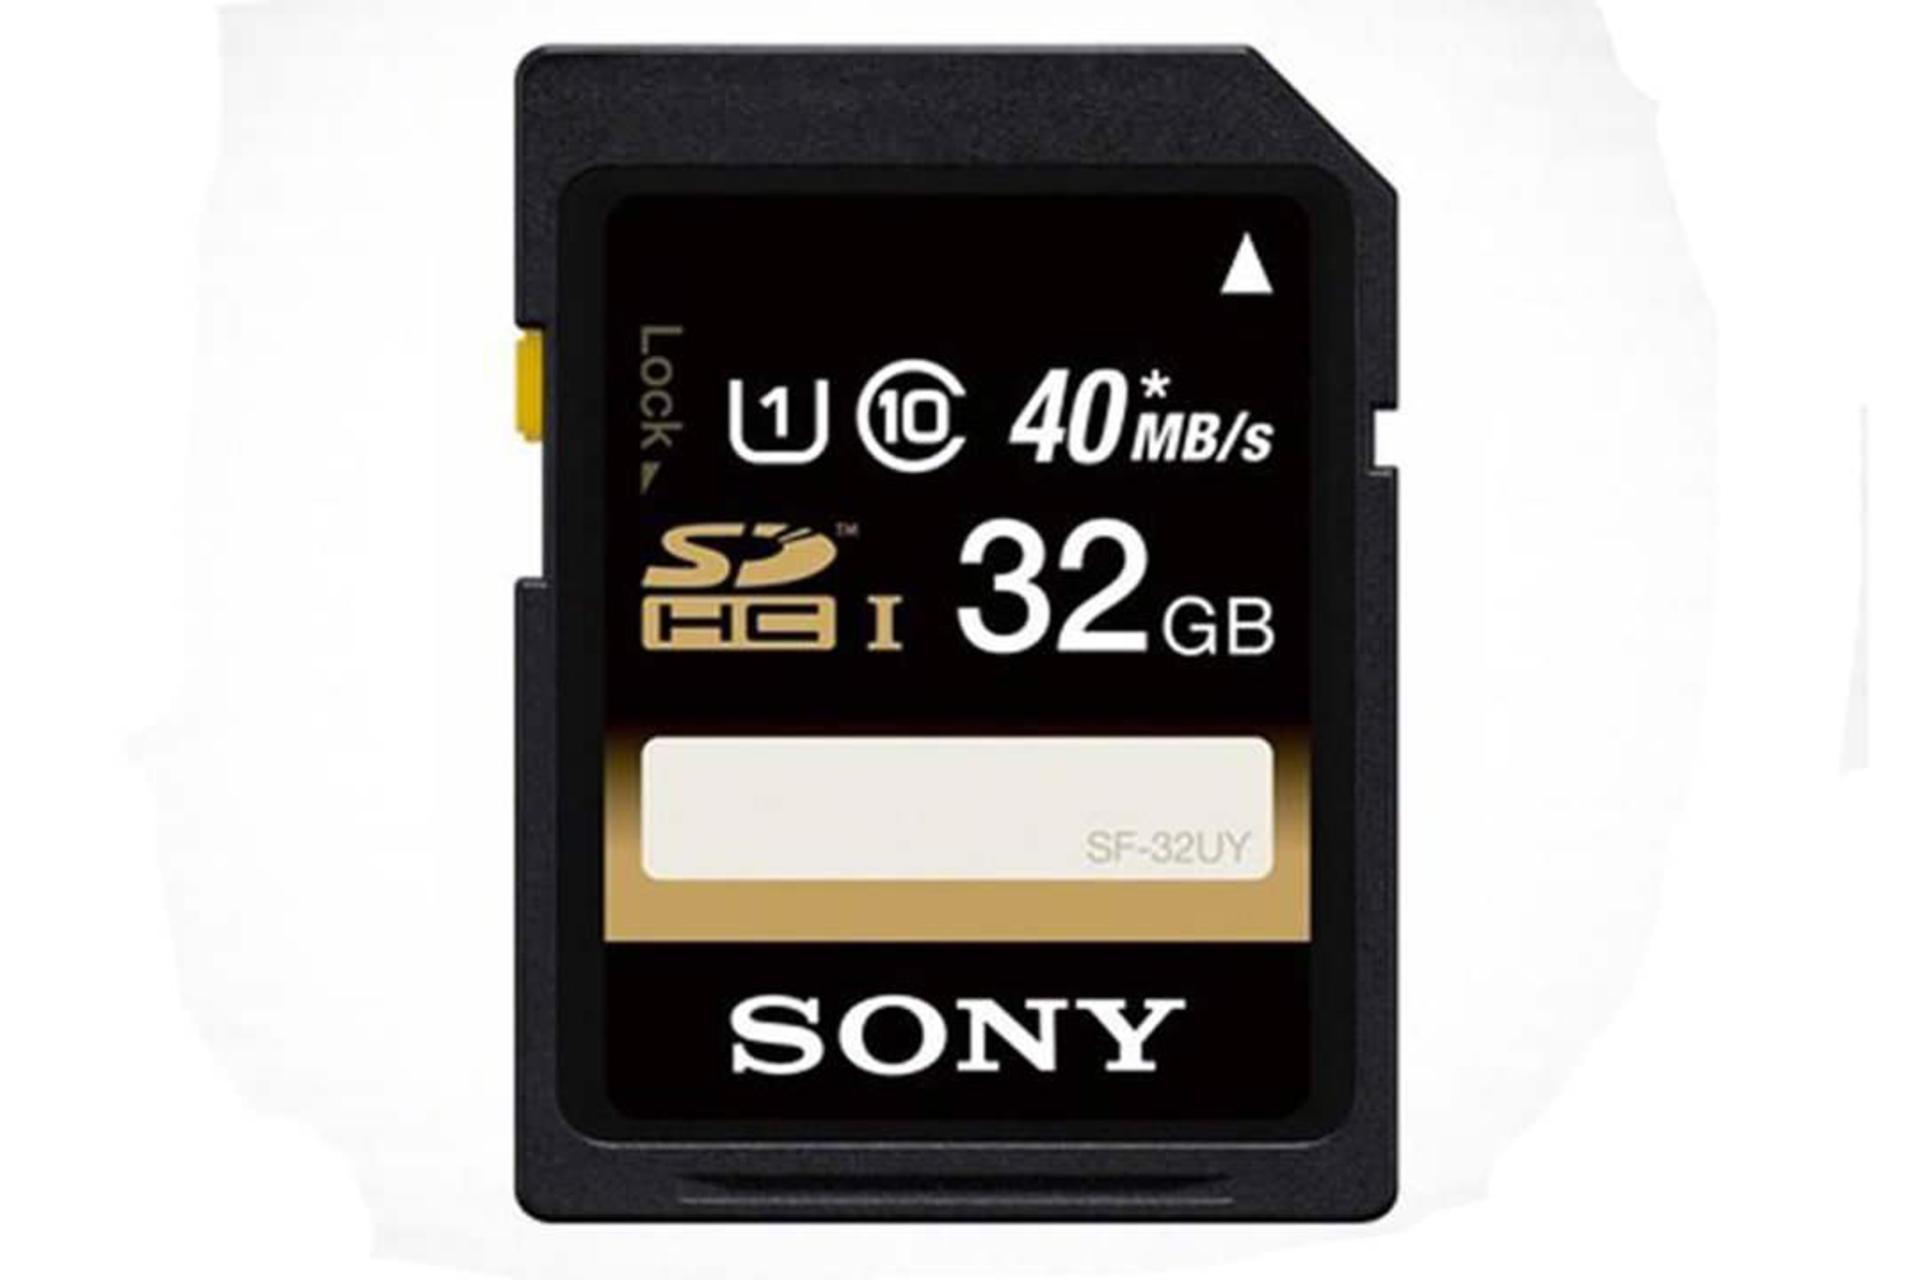 Sony SF-32UY3 SDHC Class 10 UHS-I U1 32GB